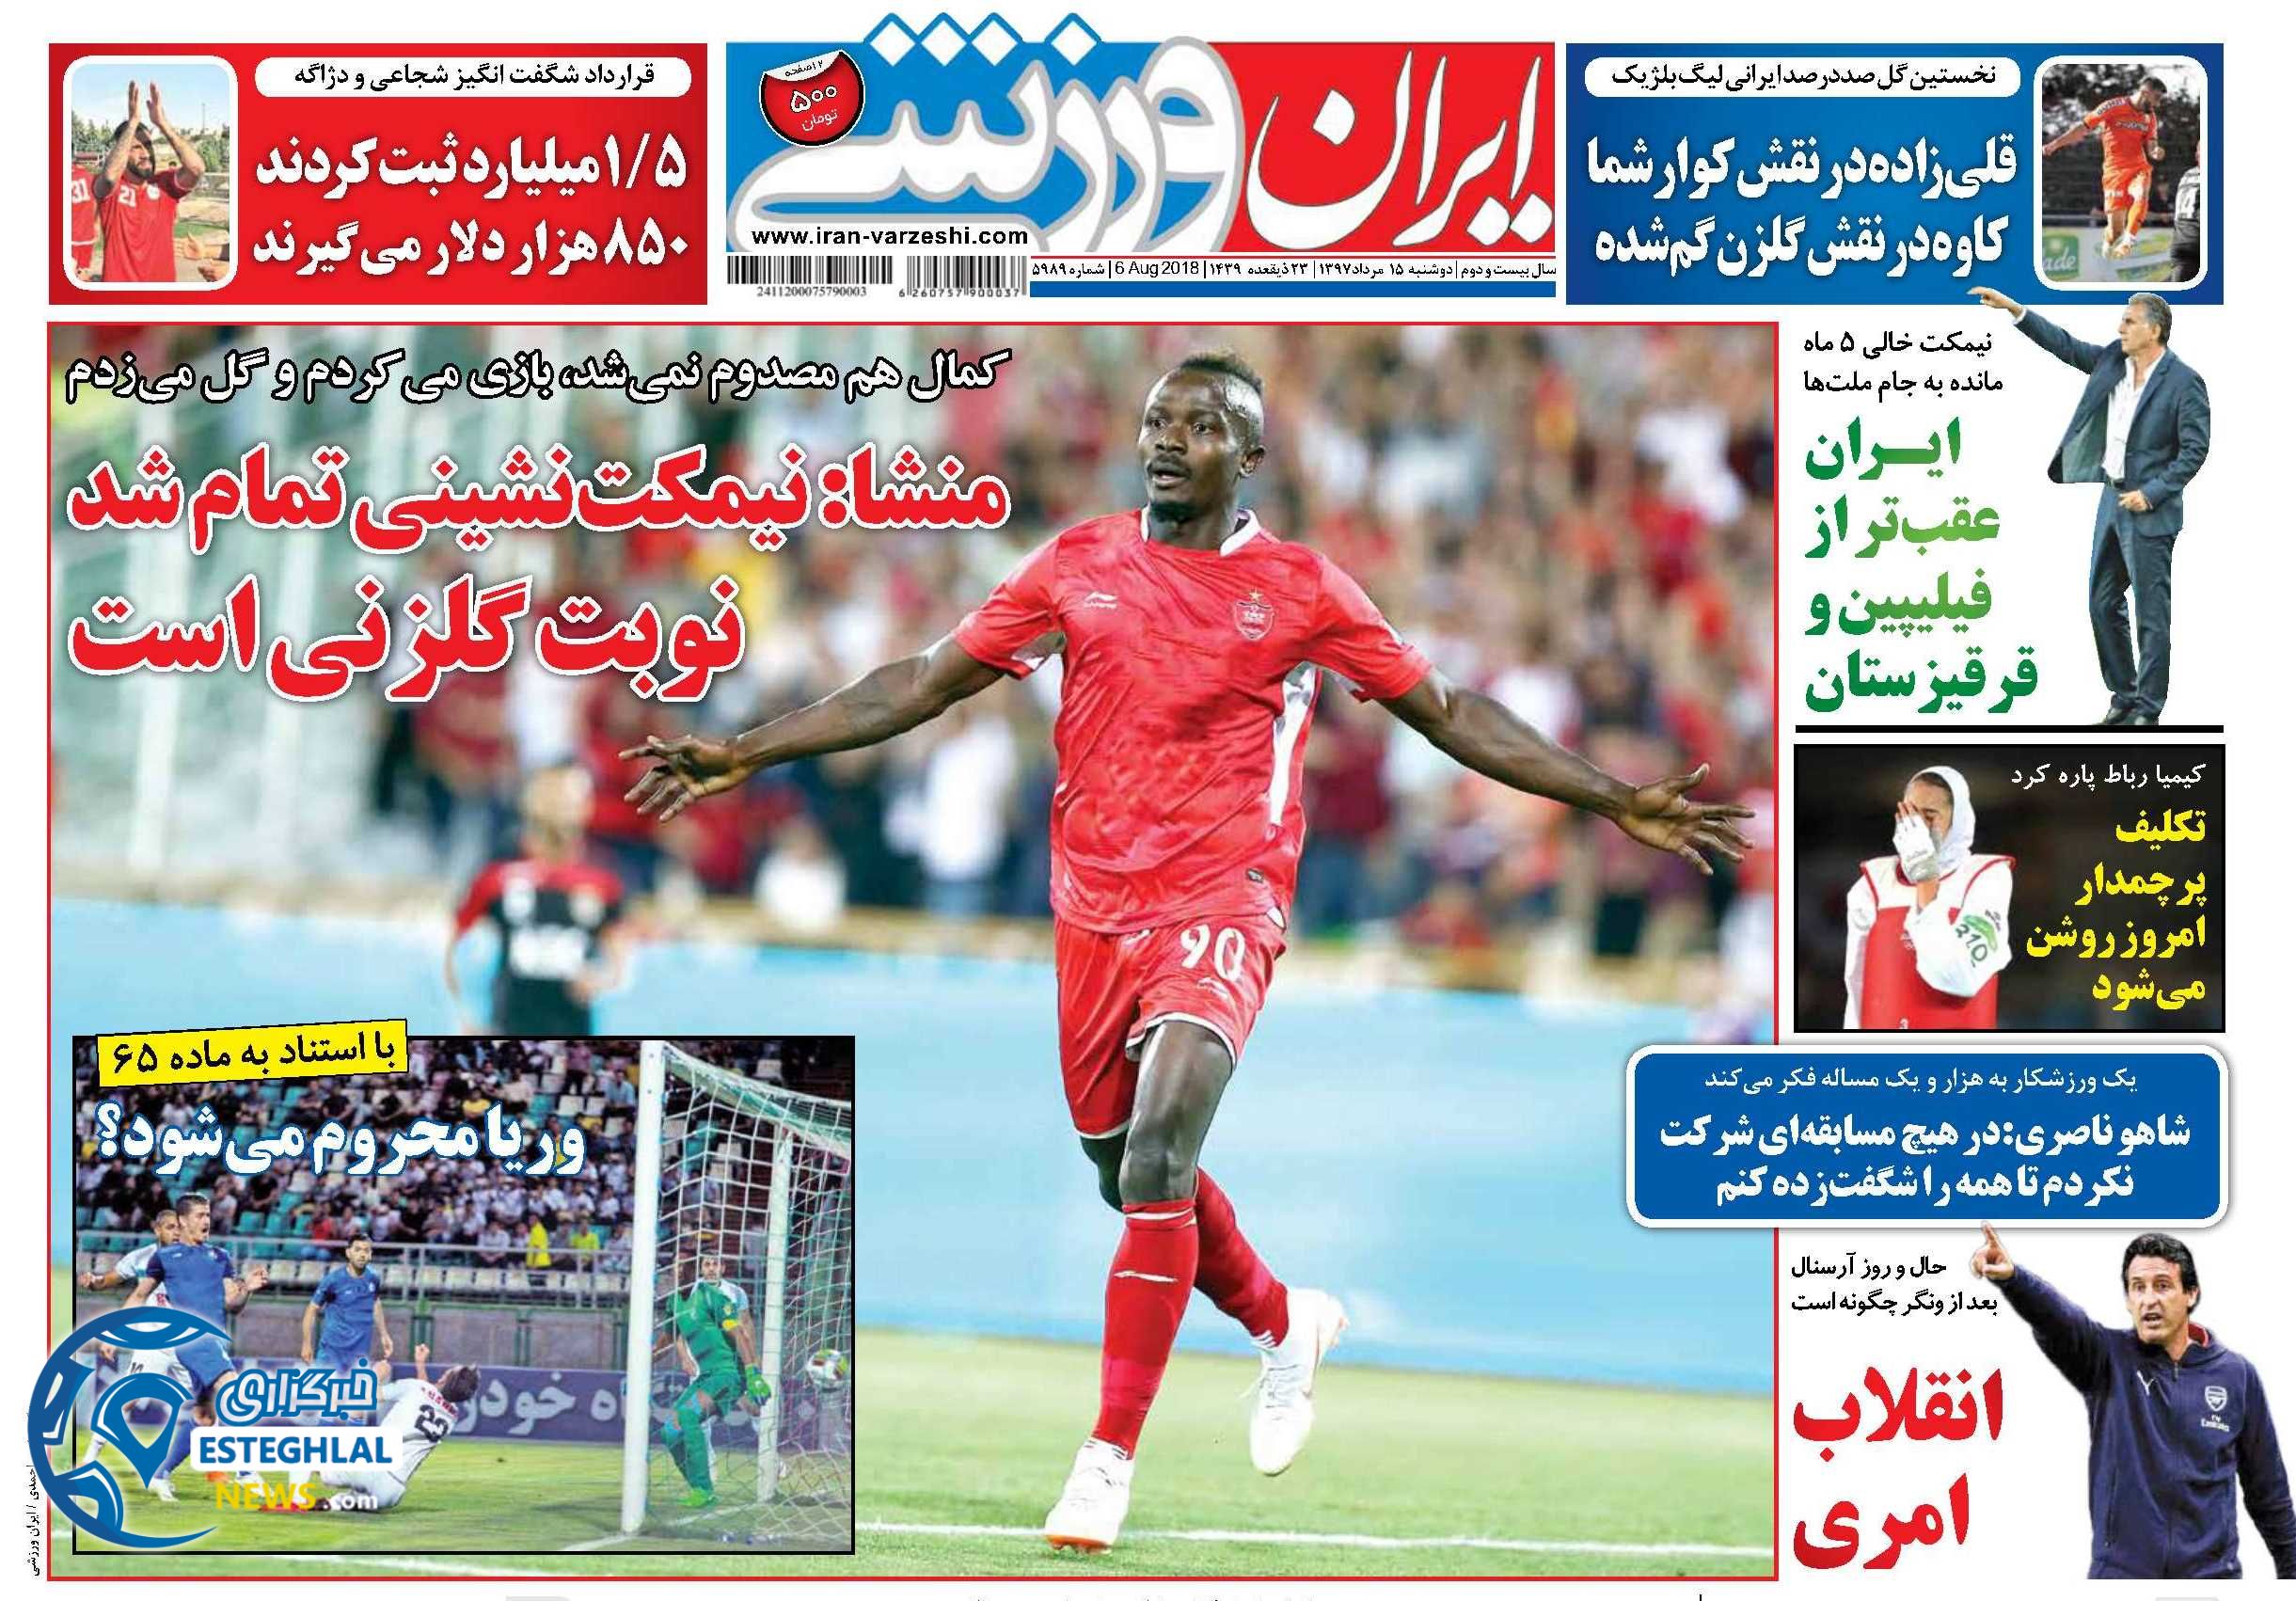 روزنامه ایران ورزشی دوشنبه 15 مرداد 1397 